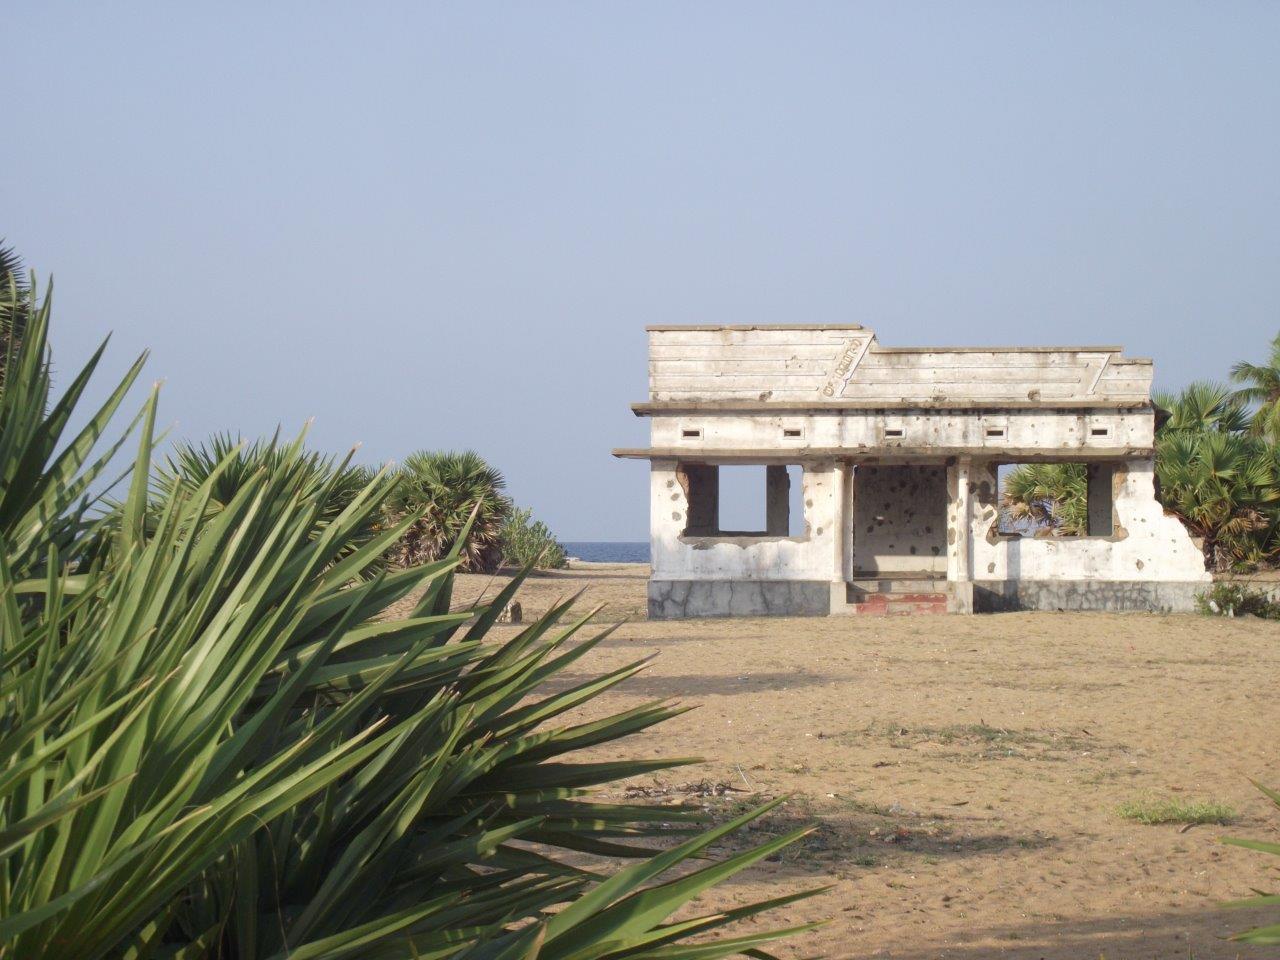 Ein beschädigtes Haus am Meer, das von Geschossen getroffen wurde.